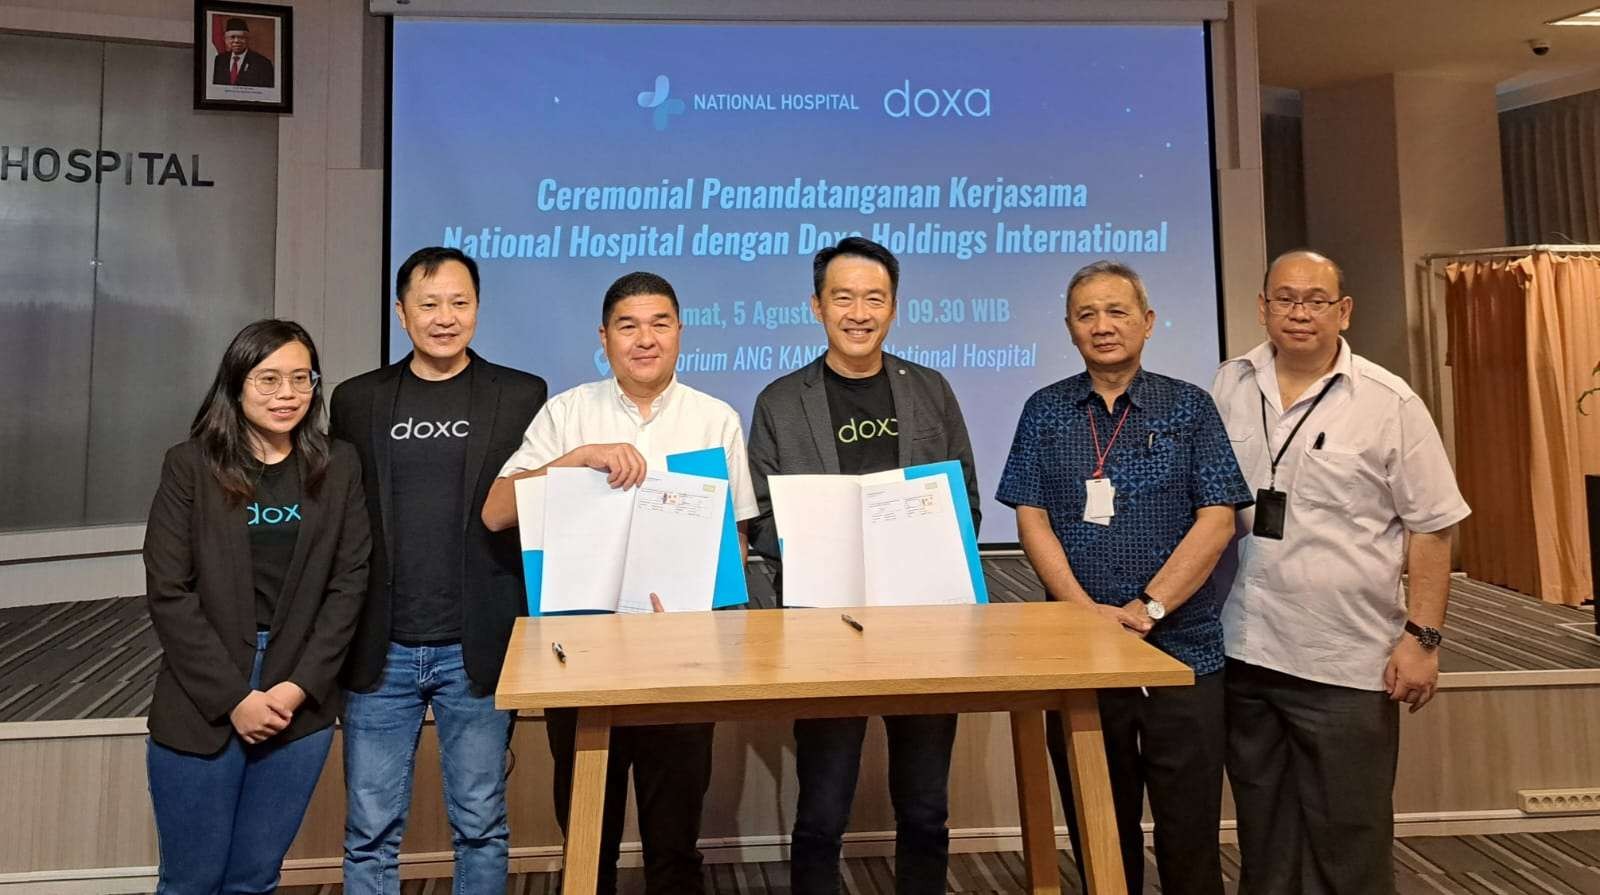 CEO National Hospital, Ang Hoey Tiong (memakai kemeja putih) dengan Henry Kwan, salah satu pendiri Doxa dan tim saat melakukan kerjasama. (Foto: Pita Sari/Ngopibareng.id)